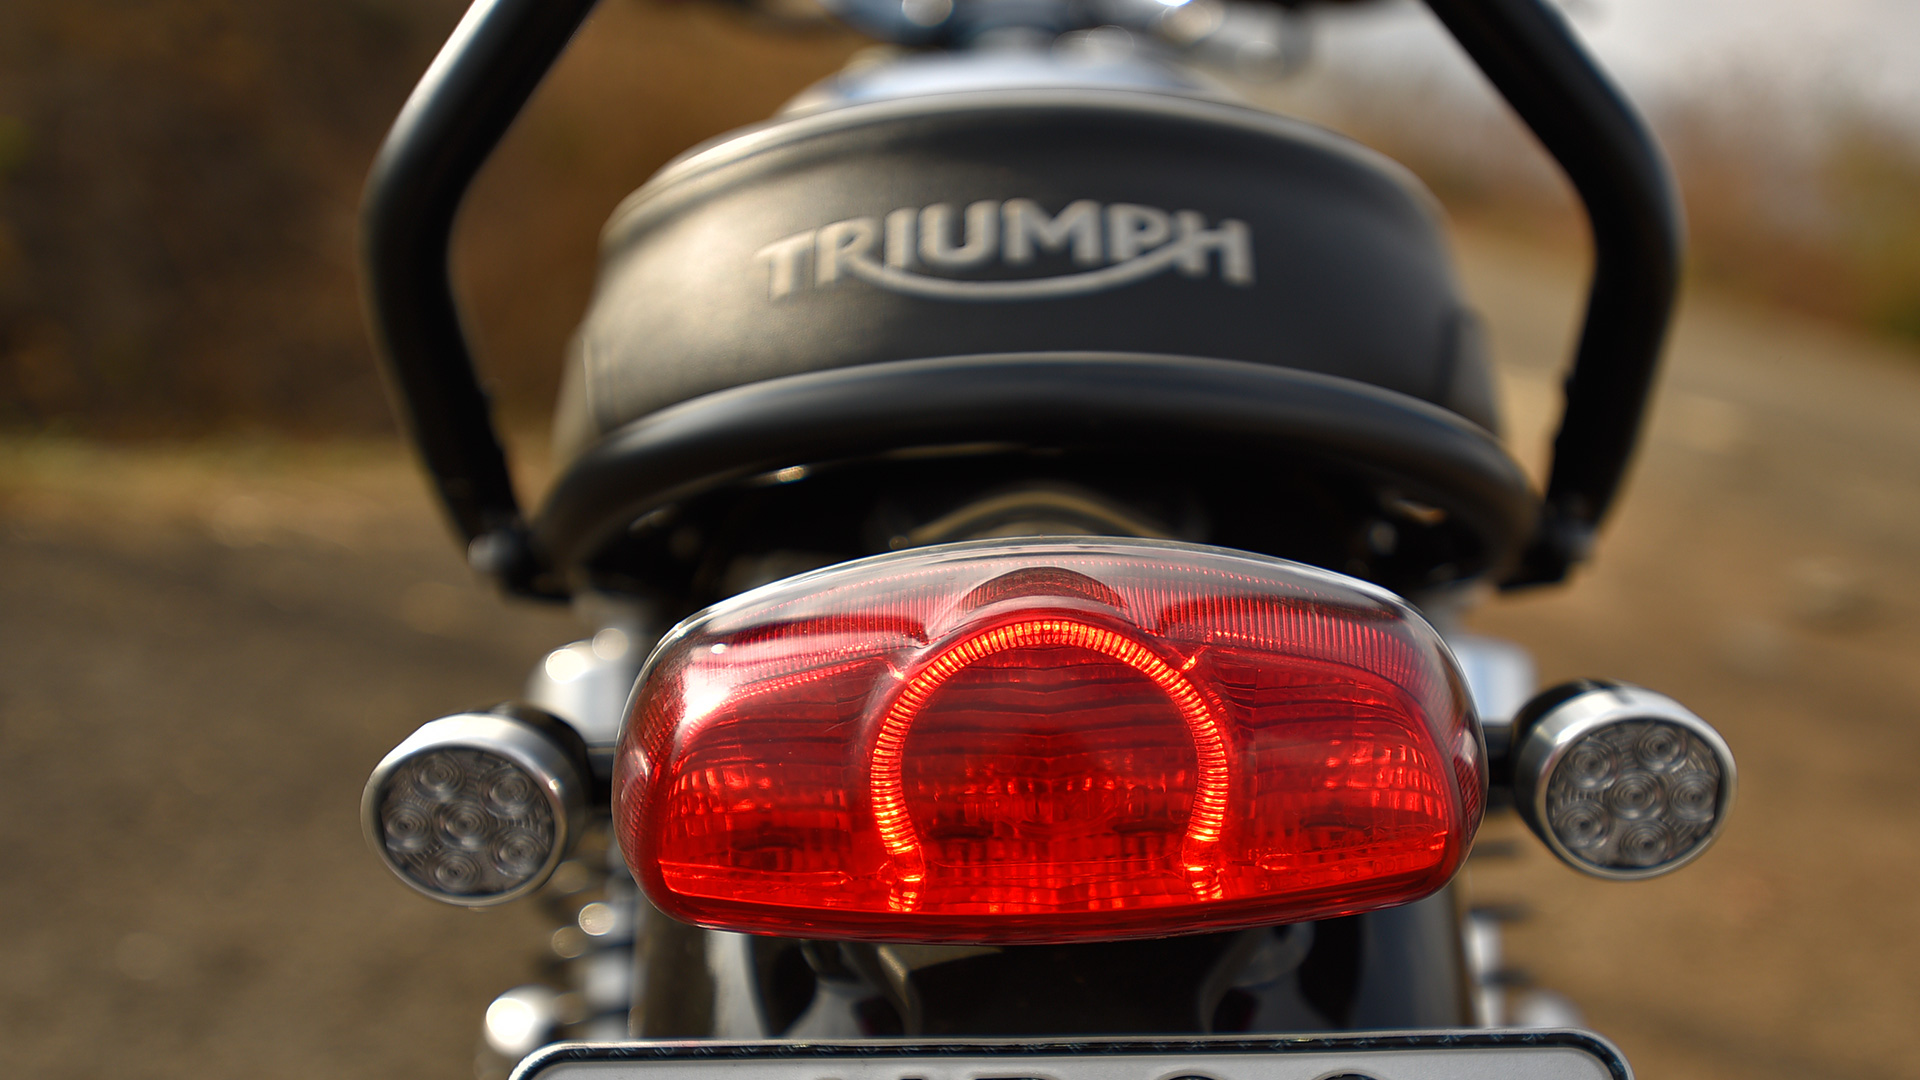 Triumph Bonneville 2016 T100